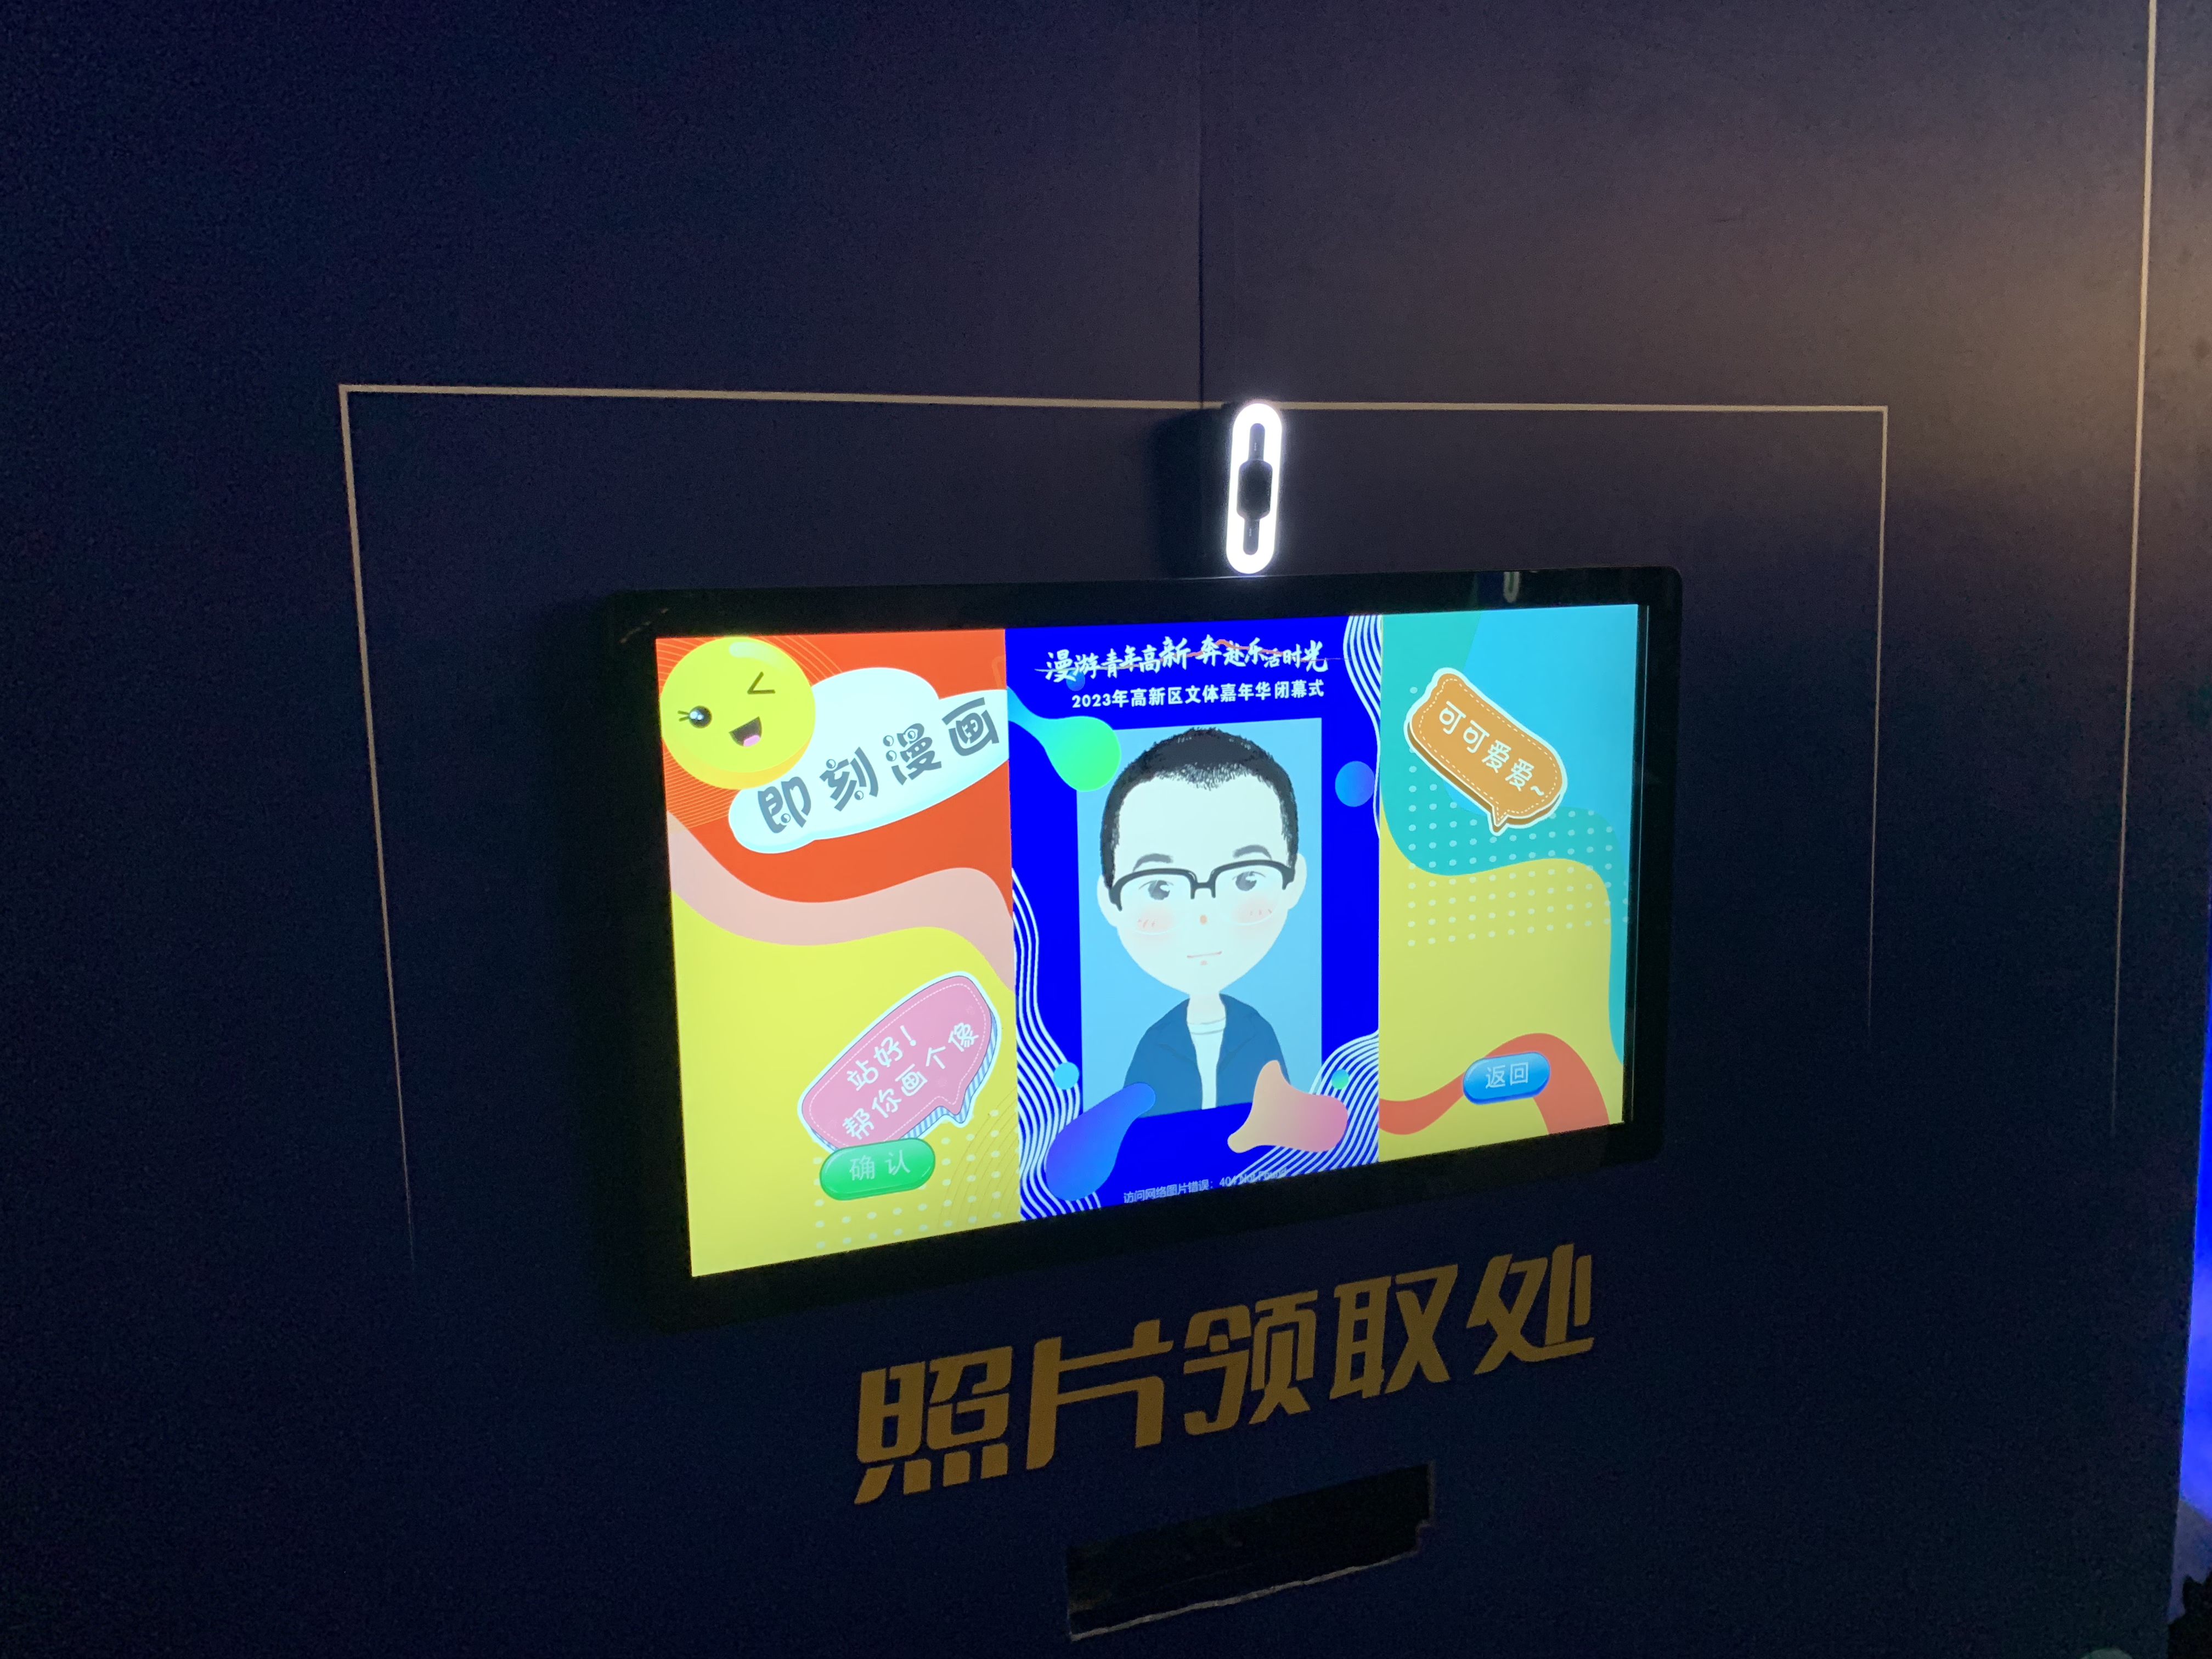 AI即刻漫画签到 嘉年华暖场互动装置 拍照签到打卡一体机